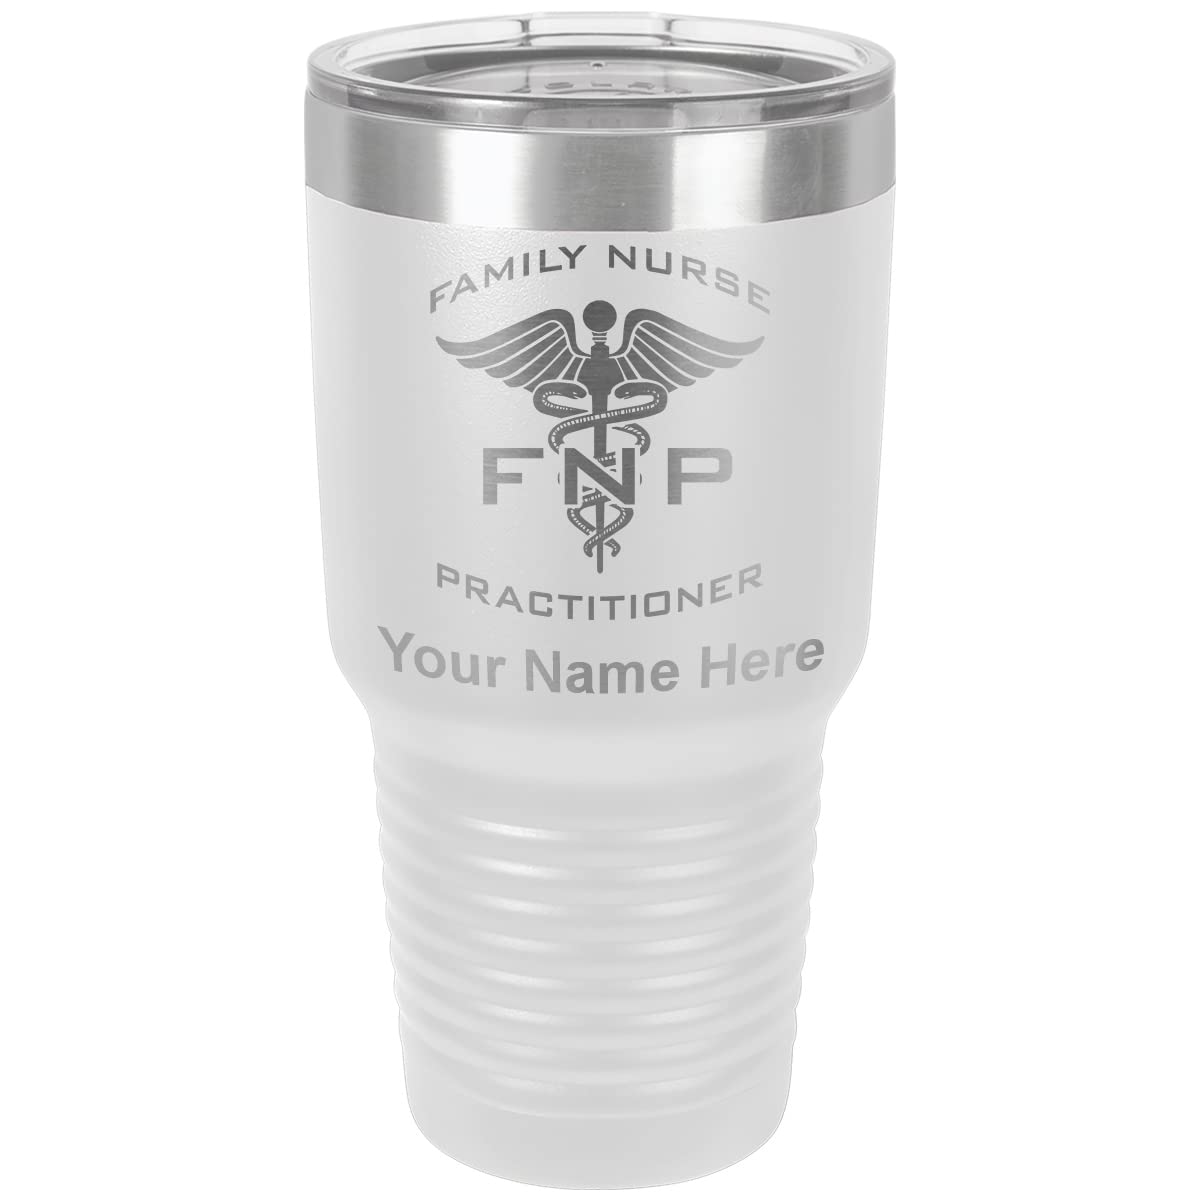 LaserGram 30oz Vacuum Insulated Tumbler Mug, FNP Family Nurse Practitioner, Personalized Engraving Included (White)